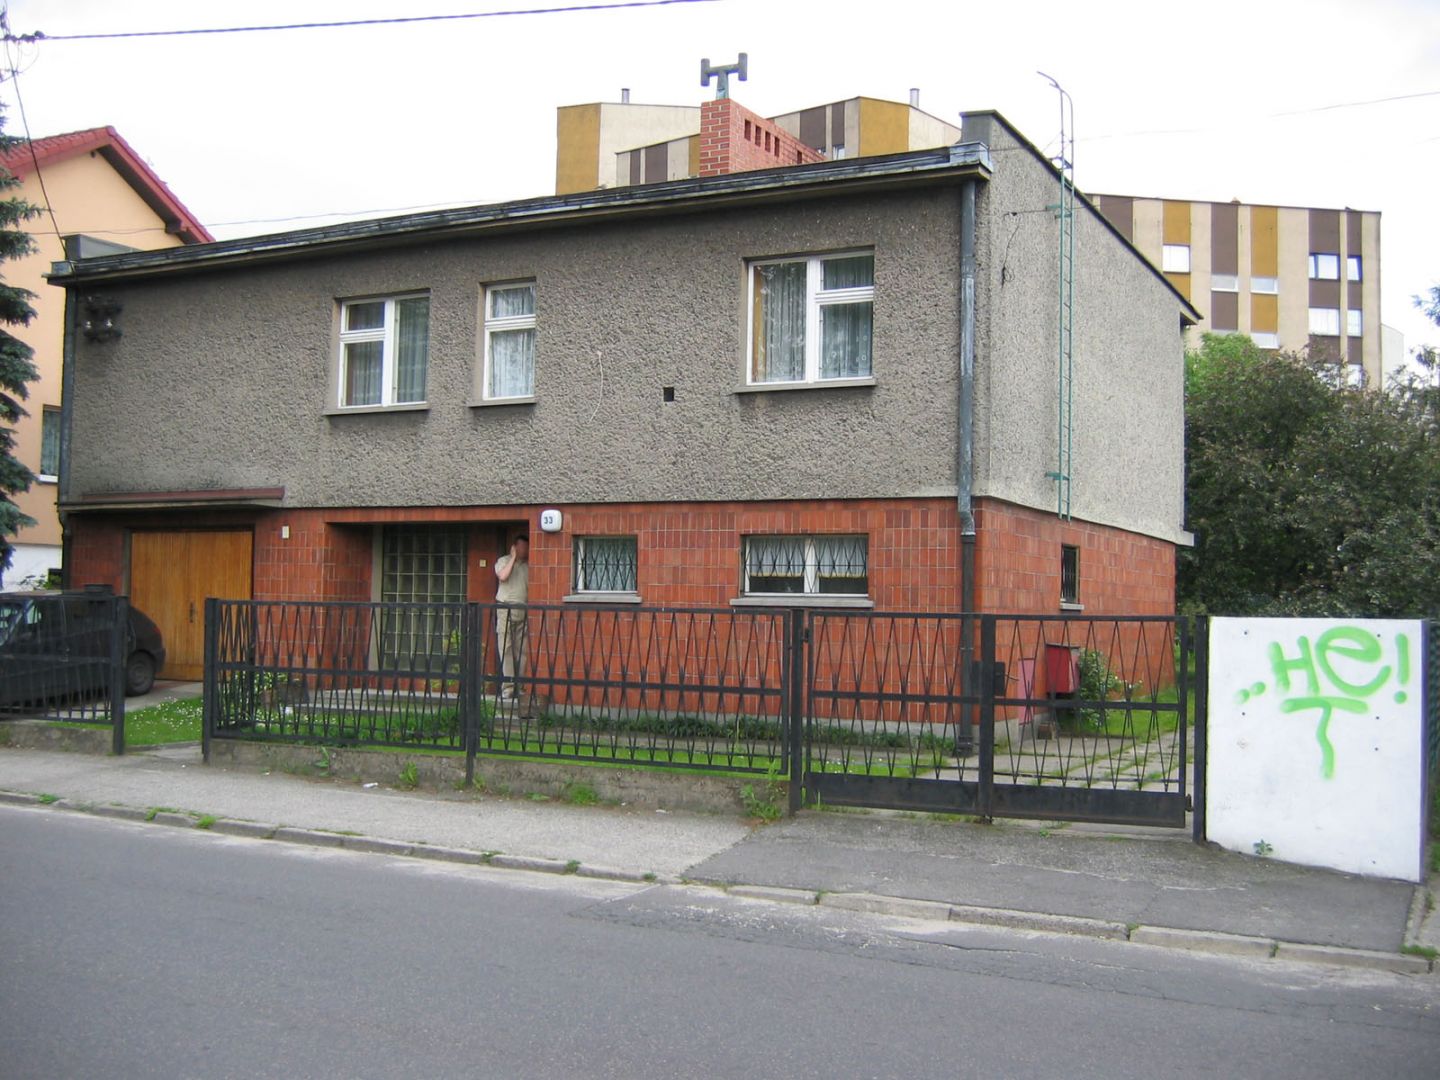 Kostka polska to wytwór myśli architektonicznej czasów PRL. Pierwsze domy zaczęły powstawać w latach 60., a ostatnie projekty datuje się na rok 1989. Fot. Dekop Pracownia Architektury